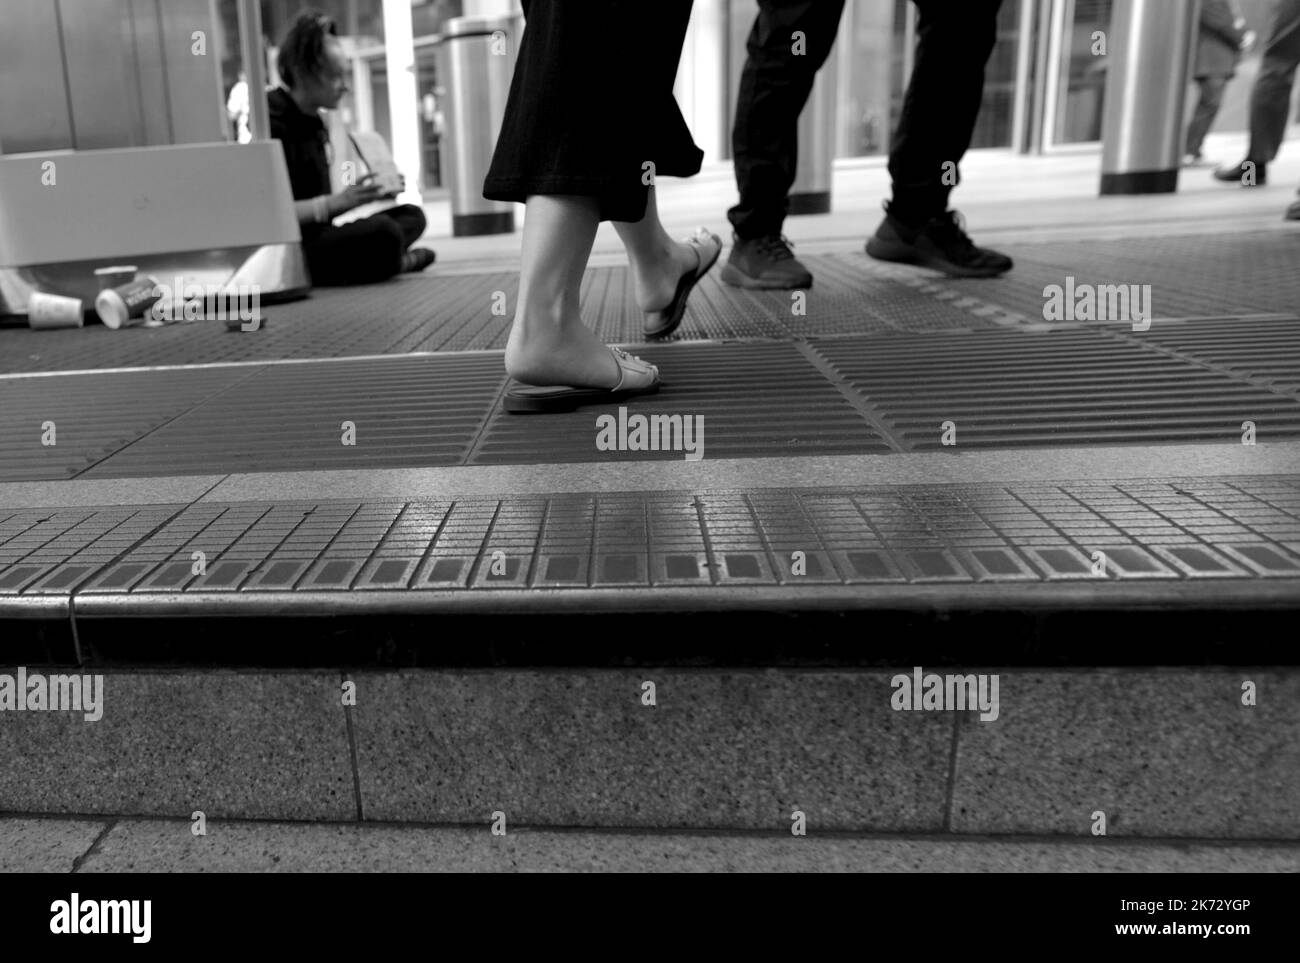 Londra, Inghilterra, Regno Unito. La gente che cammina davanti a una persona senza tetto che implora sui gradini della stazione della metropolitana Victoria Foto Stock